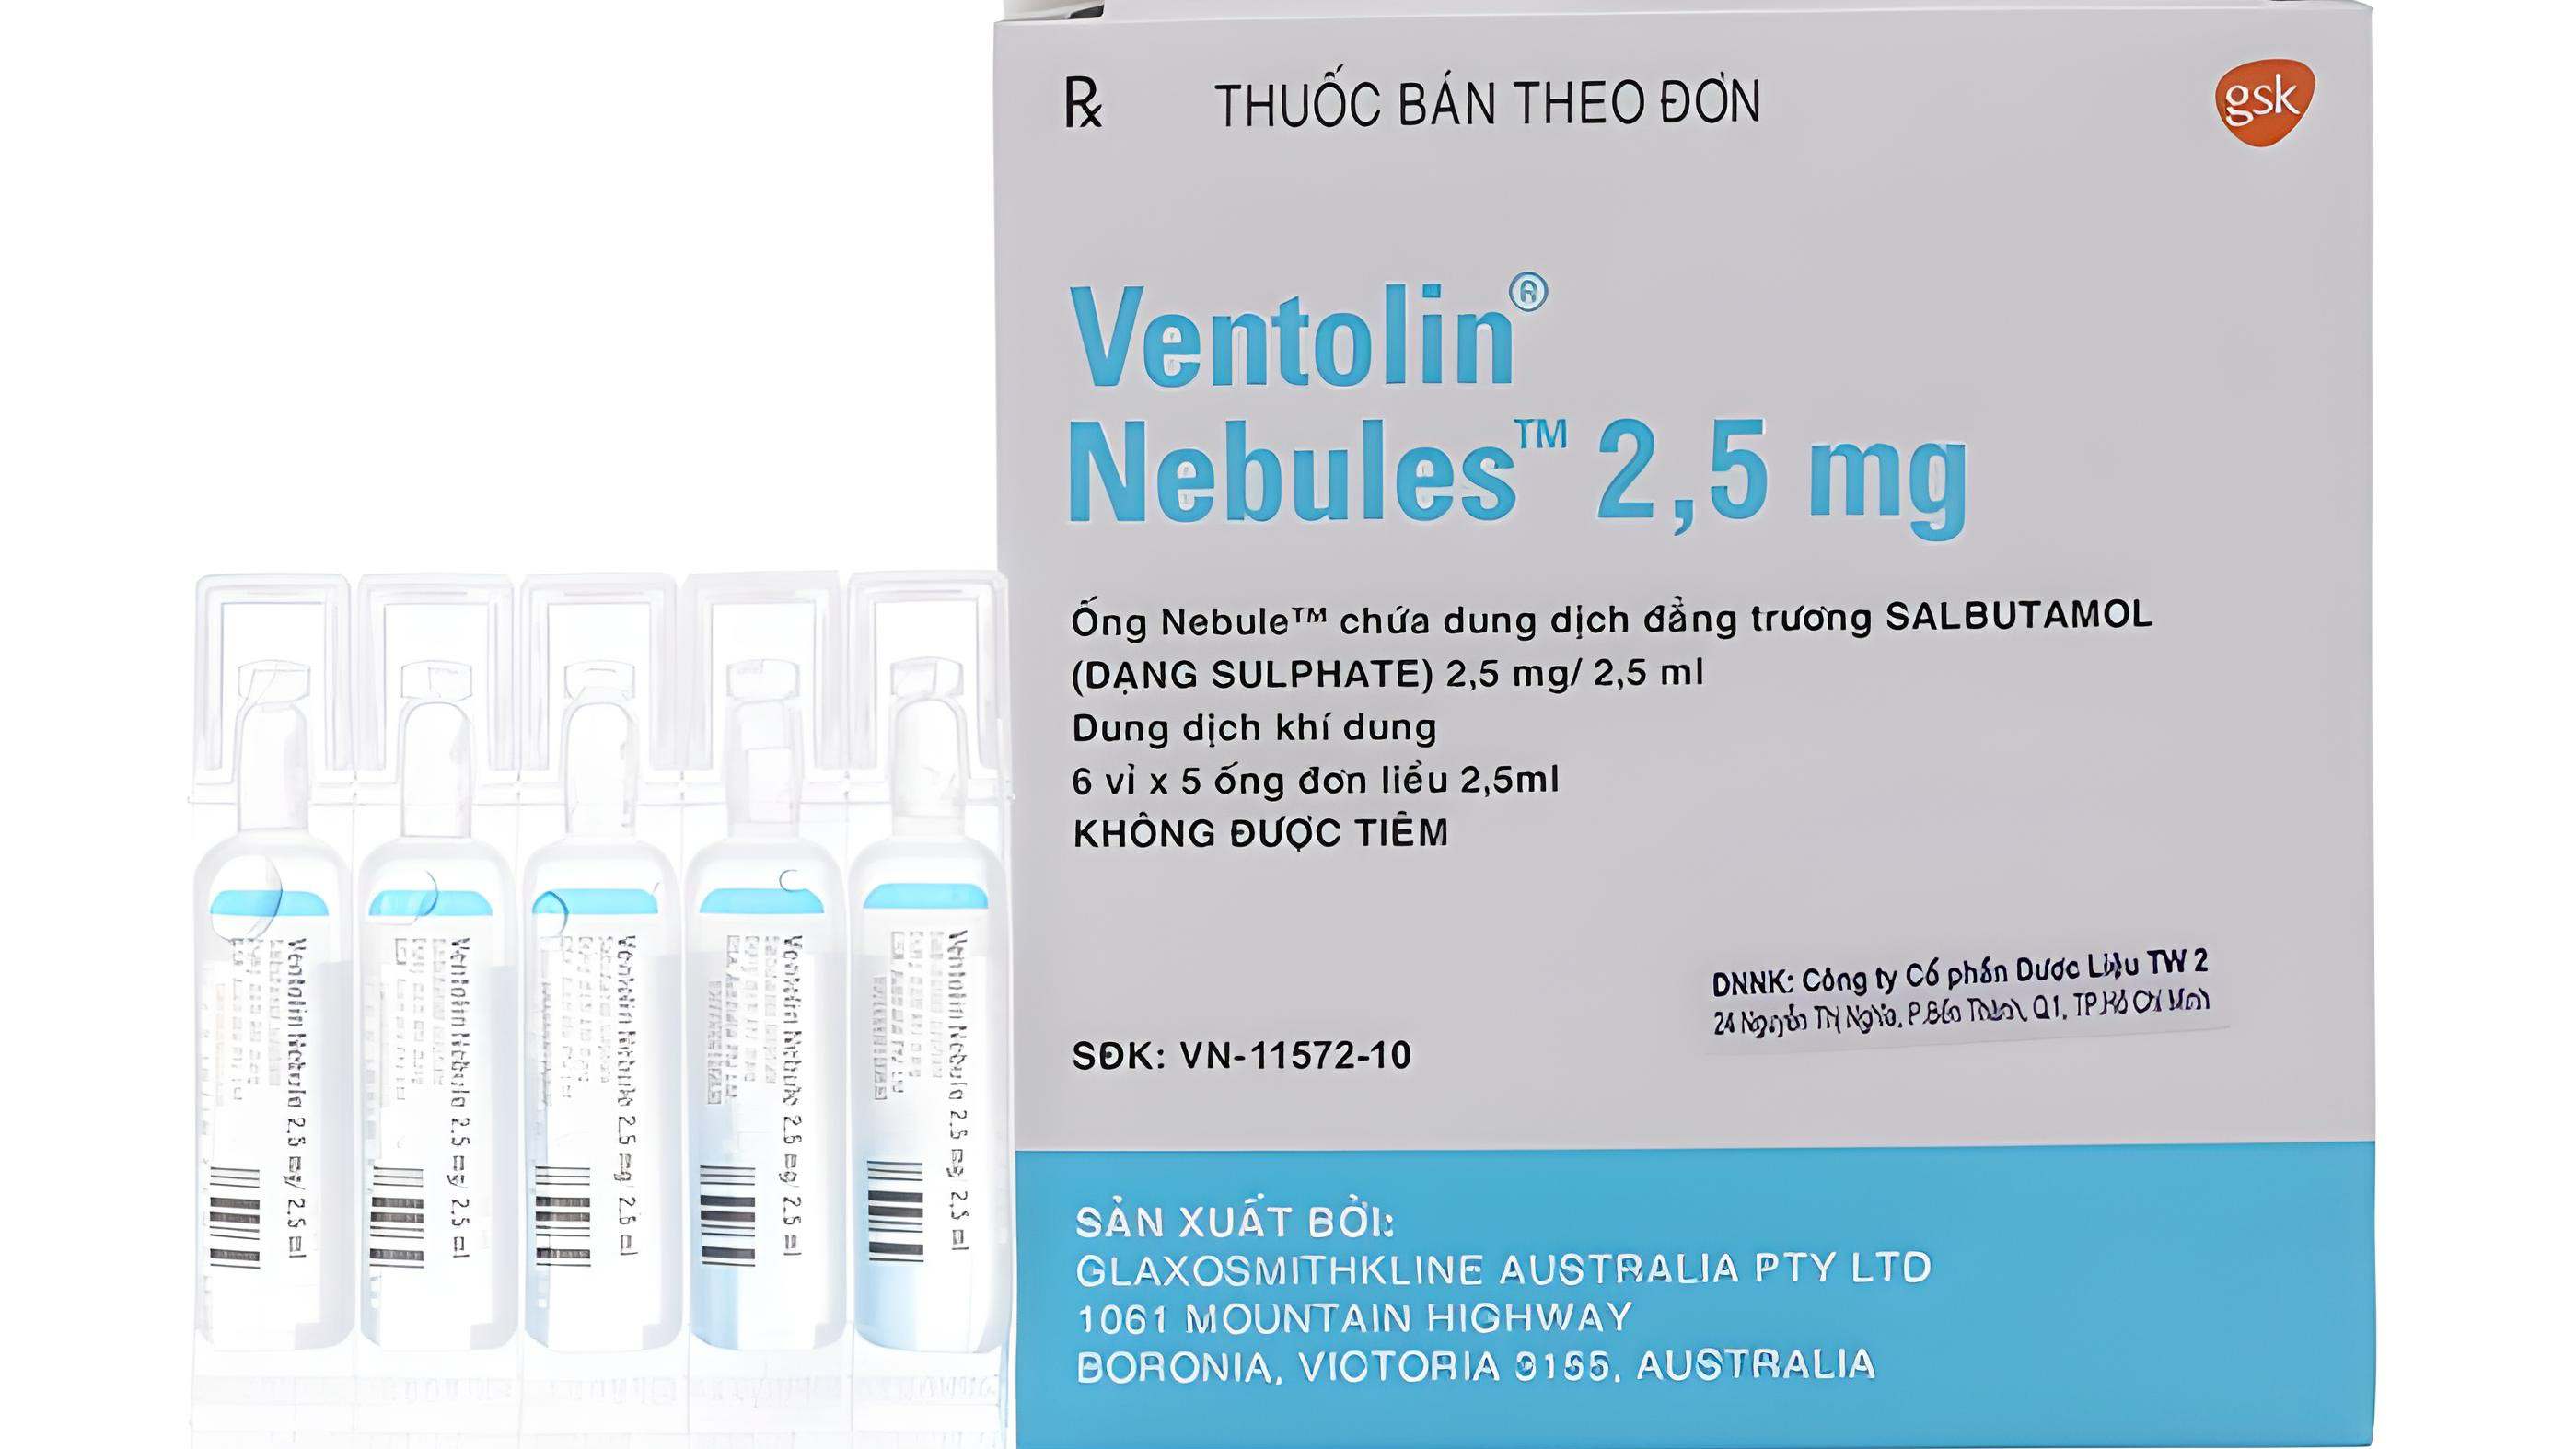 Ventolin nebules 2 5mg có hoạt chất chính là gì?
